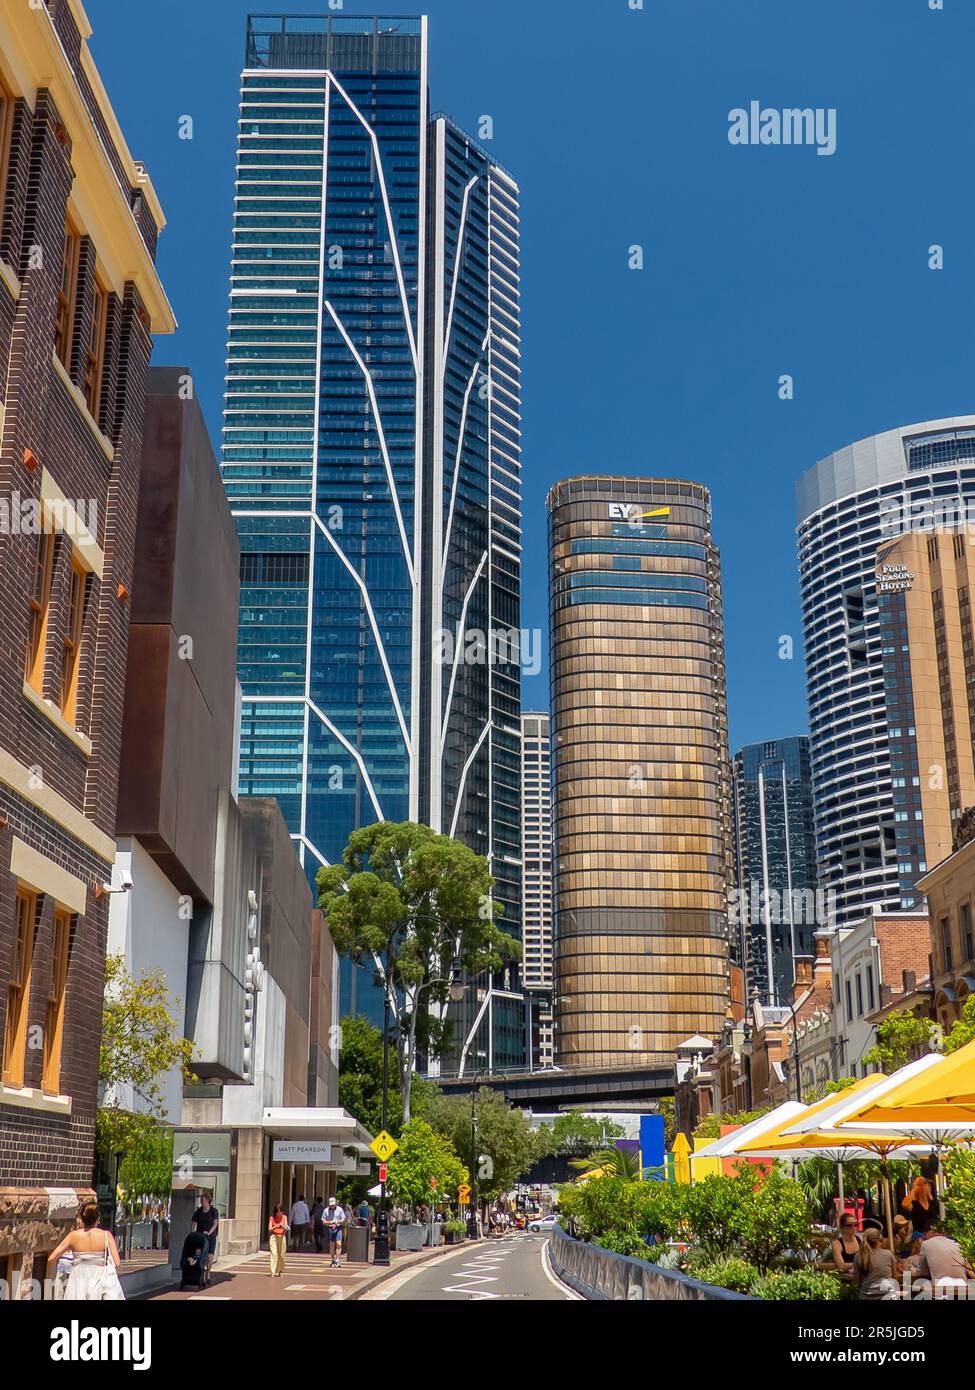 Le quartier « The Rocks » de Sydney, où vous trouverez des bars et des restaurants. Banque D'Images